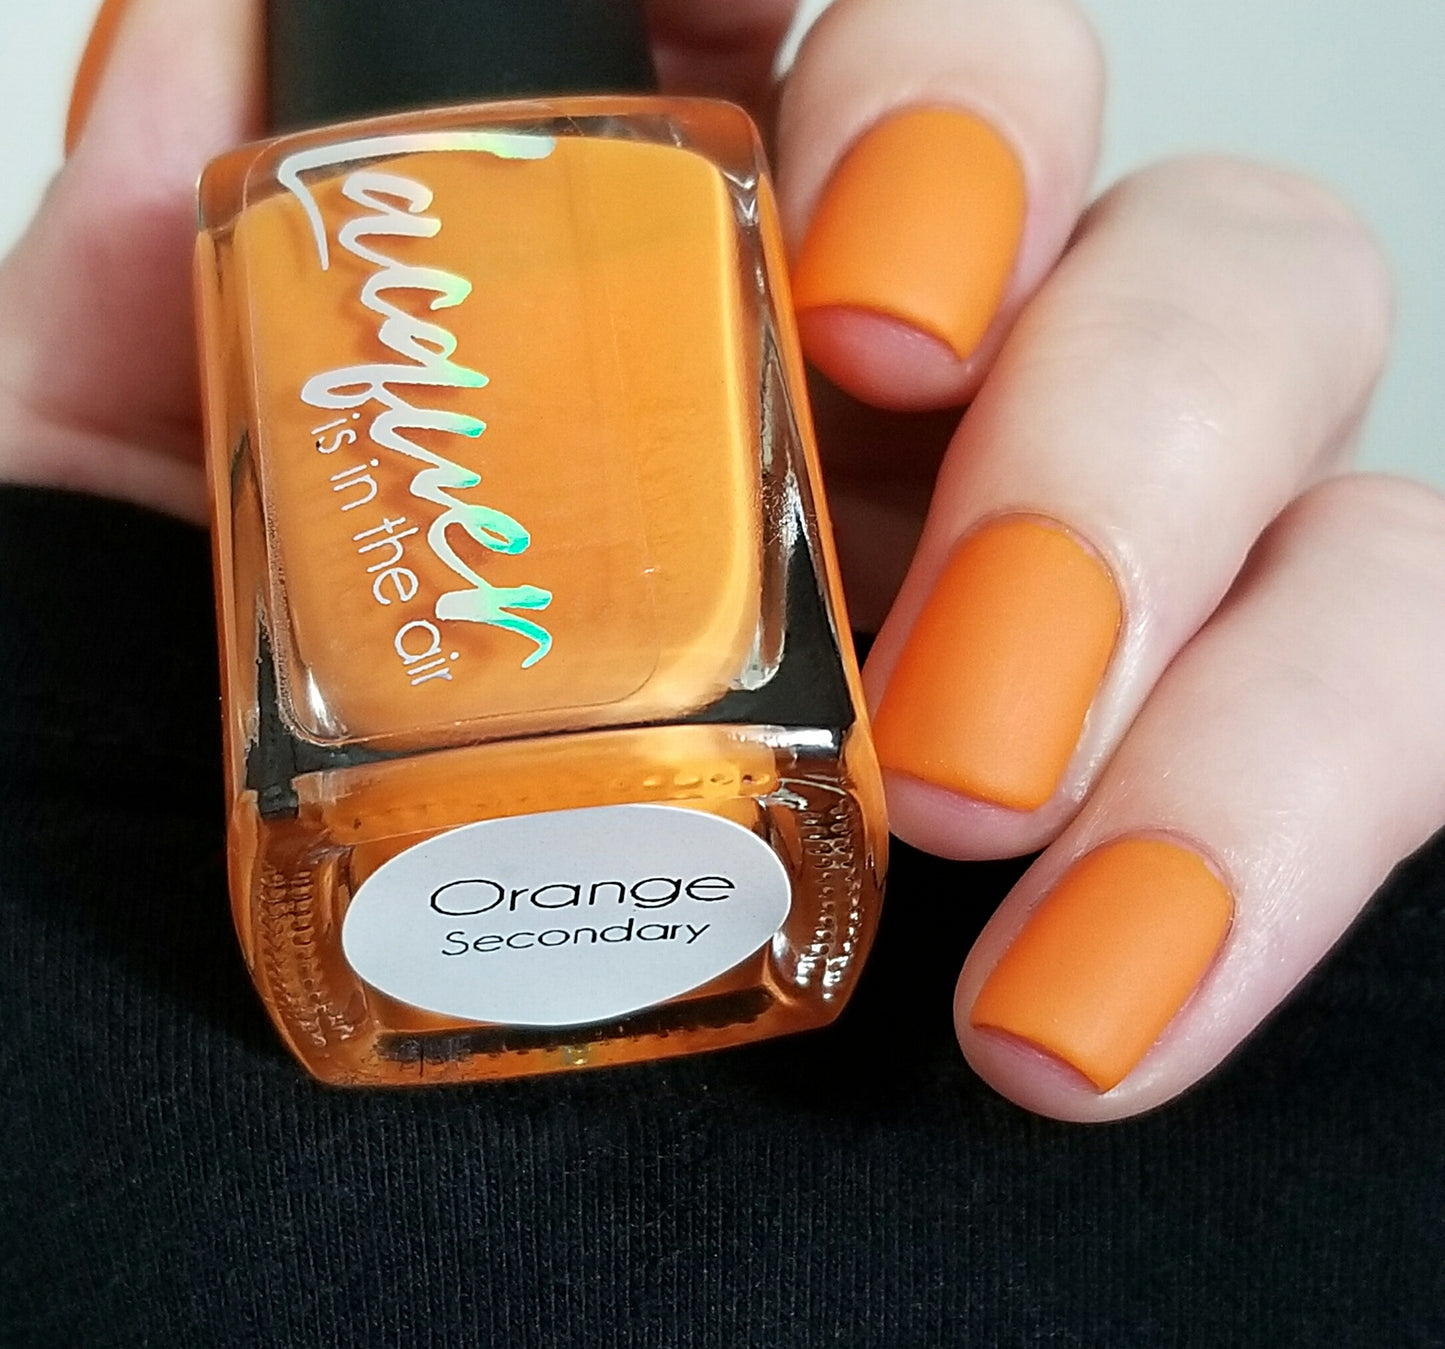 Orange (Secondary)